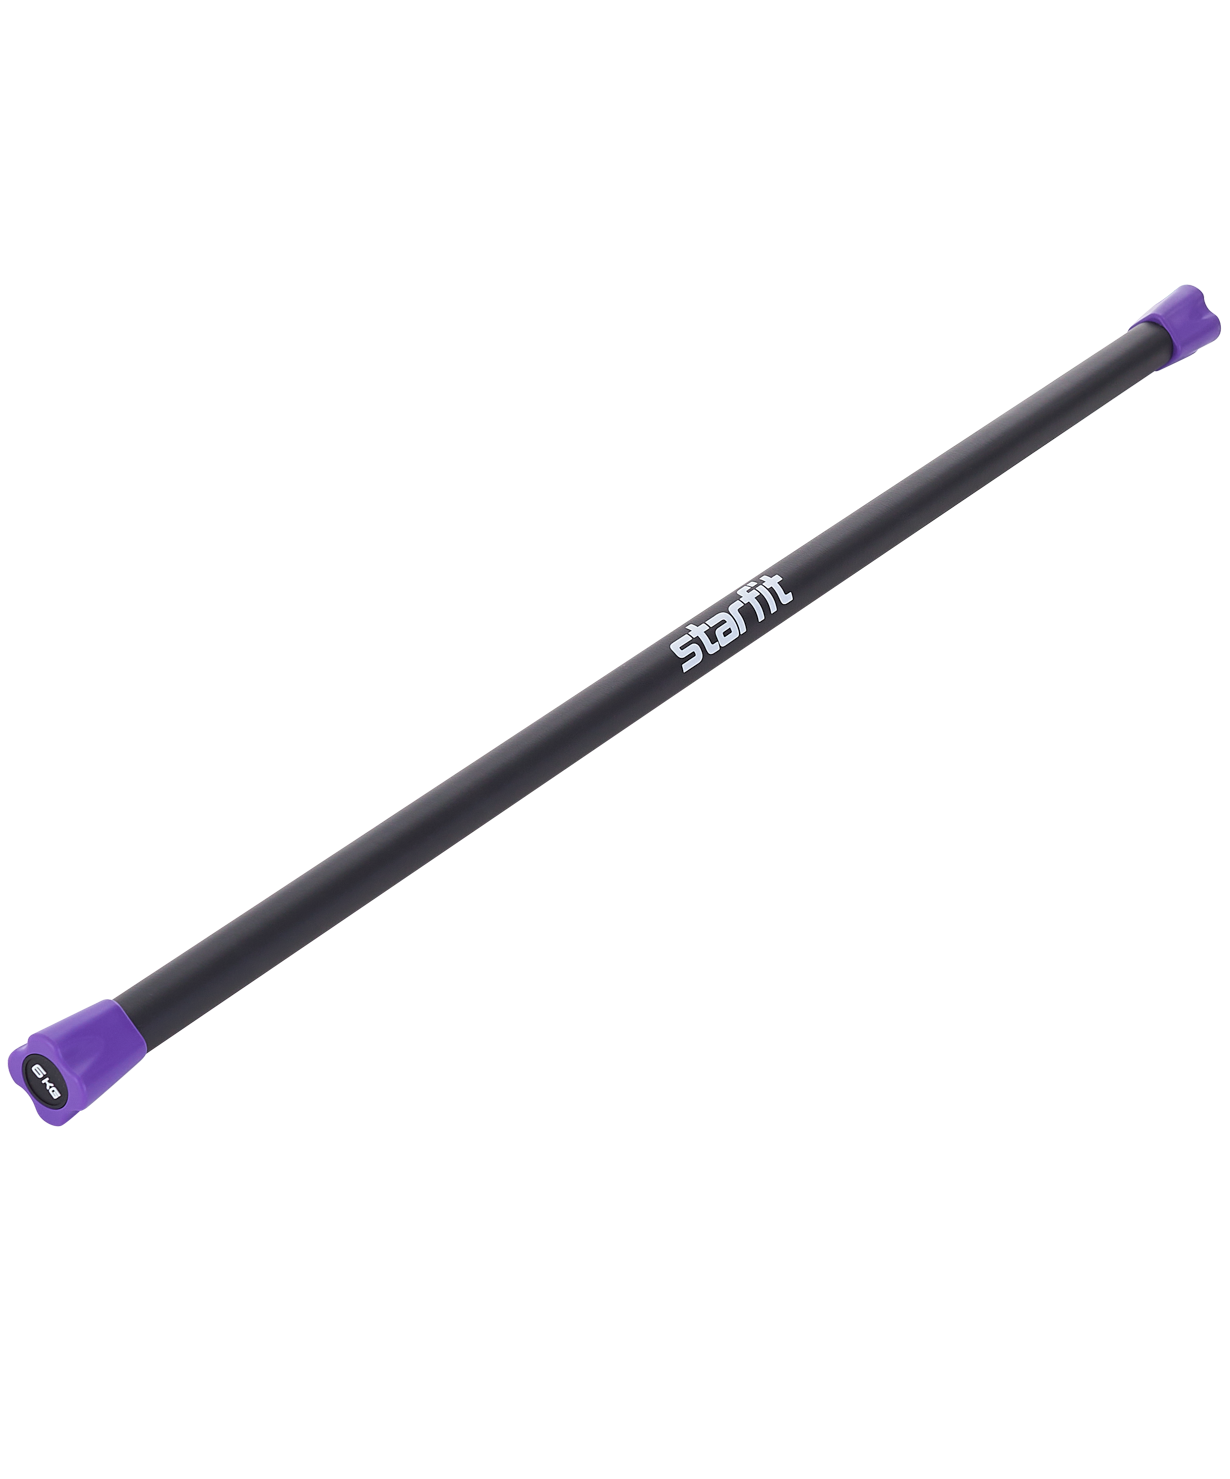 Бодибар STARFIT BB-301 6 кг, неопреновый, черный/фиолетовый